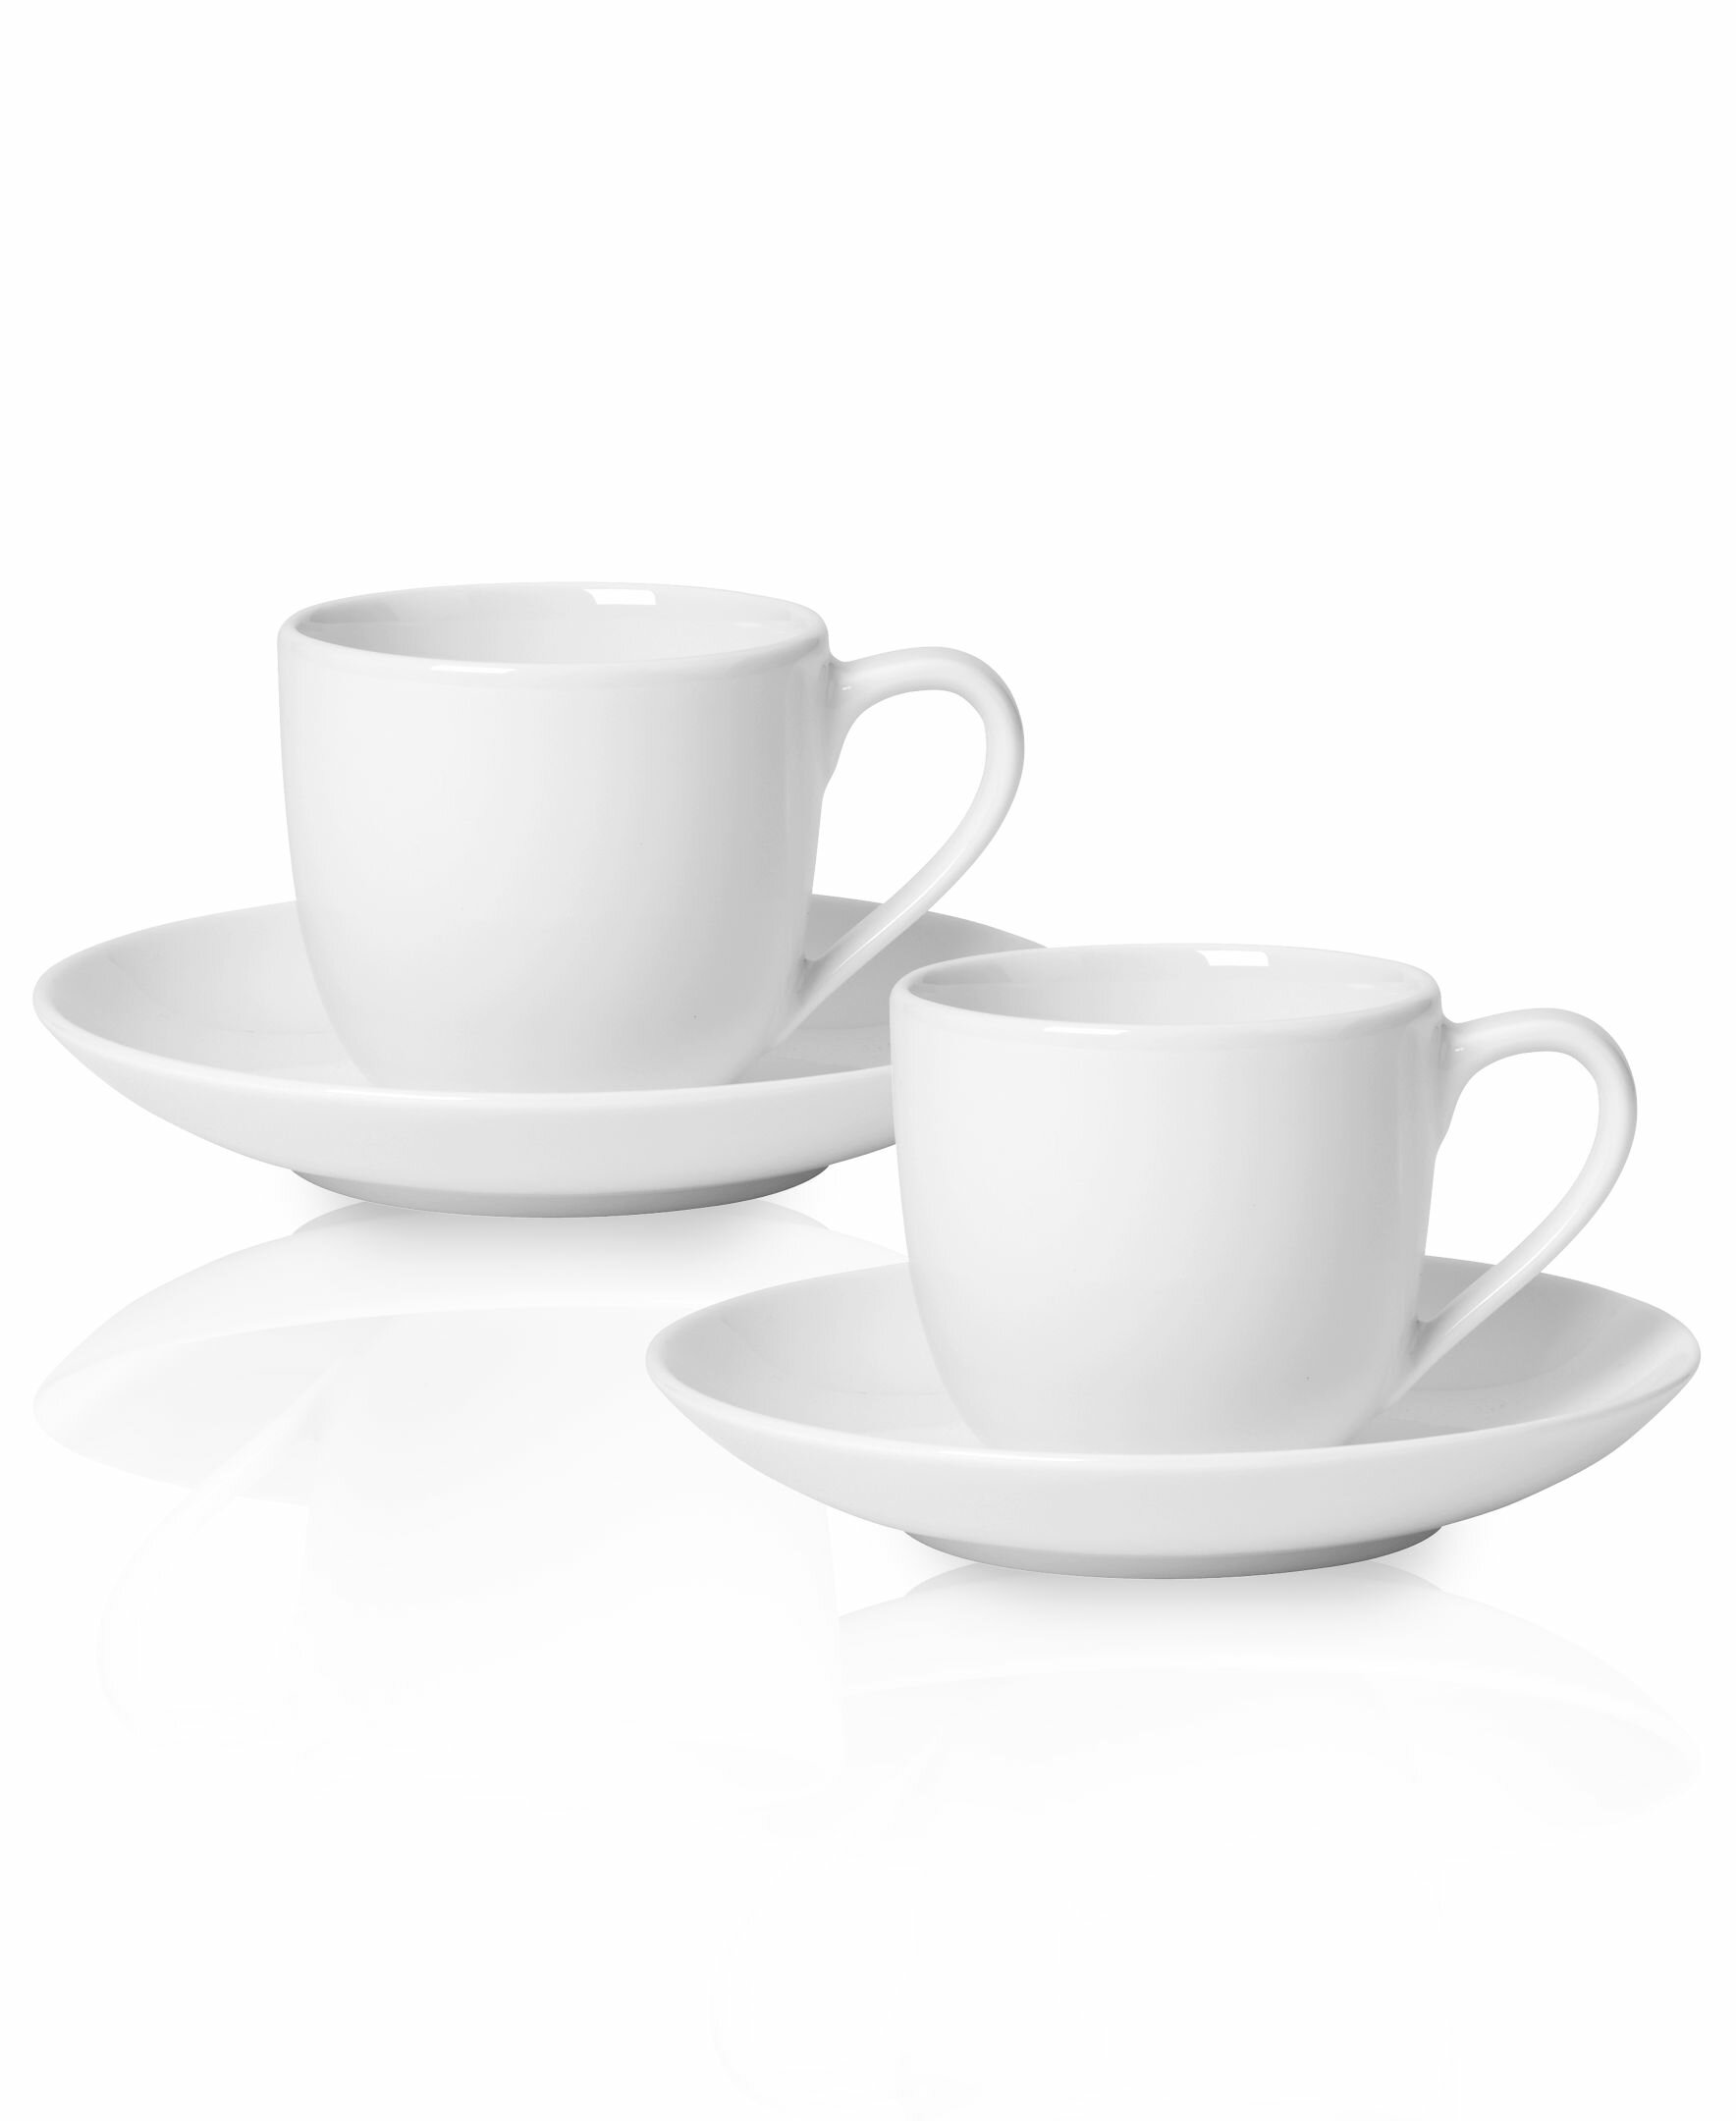 https://assets.wfcdn.com/im/62219827/compr-r85/3700/37006429/for-me-porcelain-china-espresso-cup-set.jpg